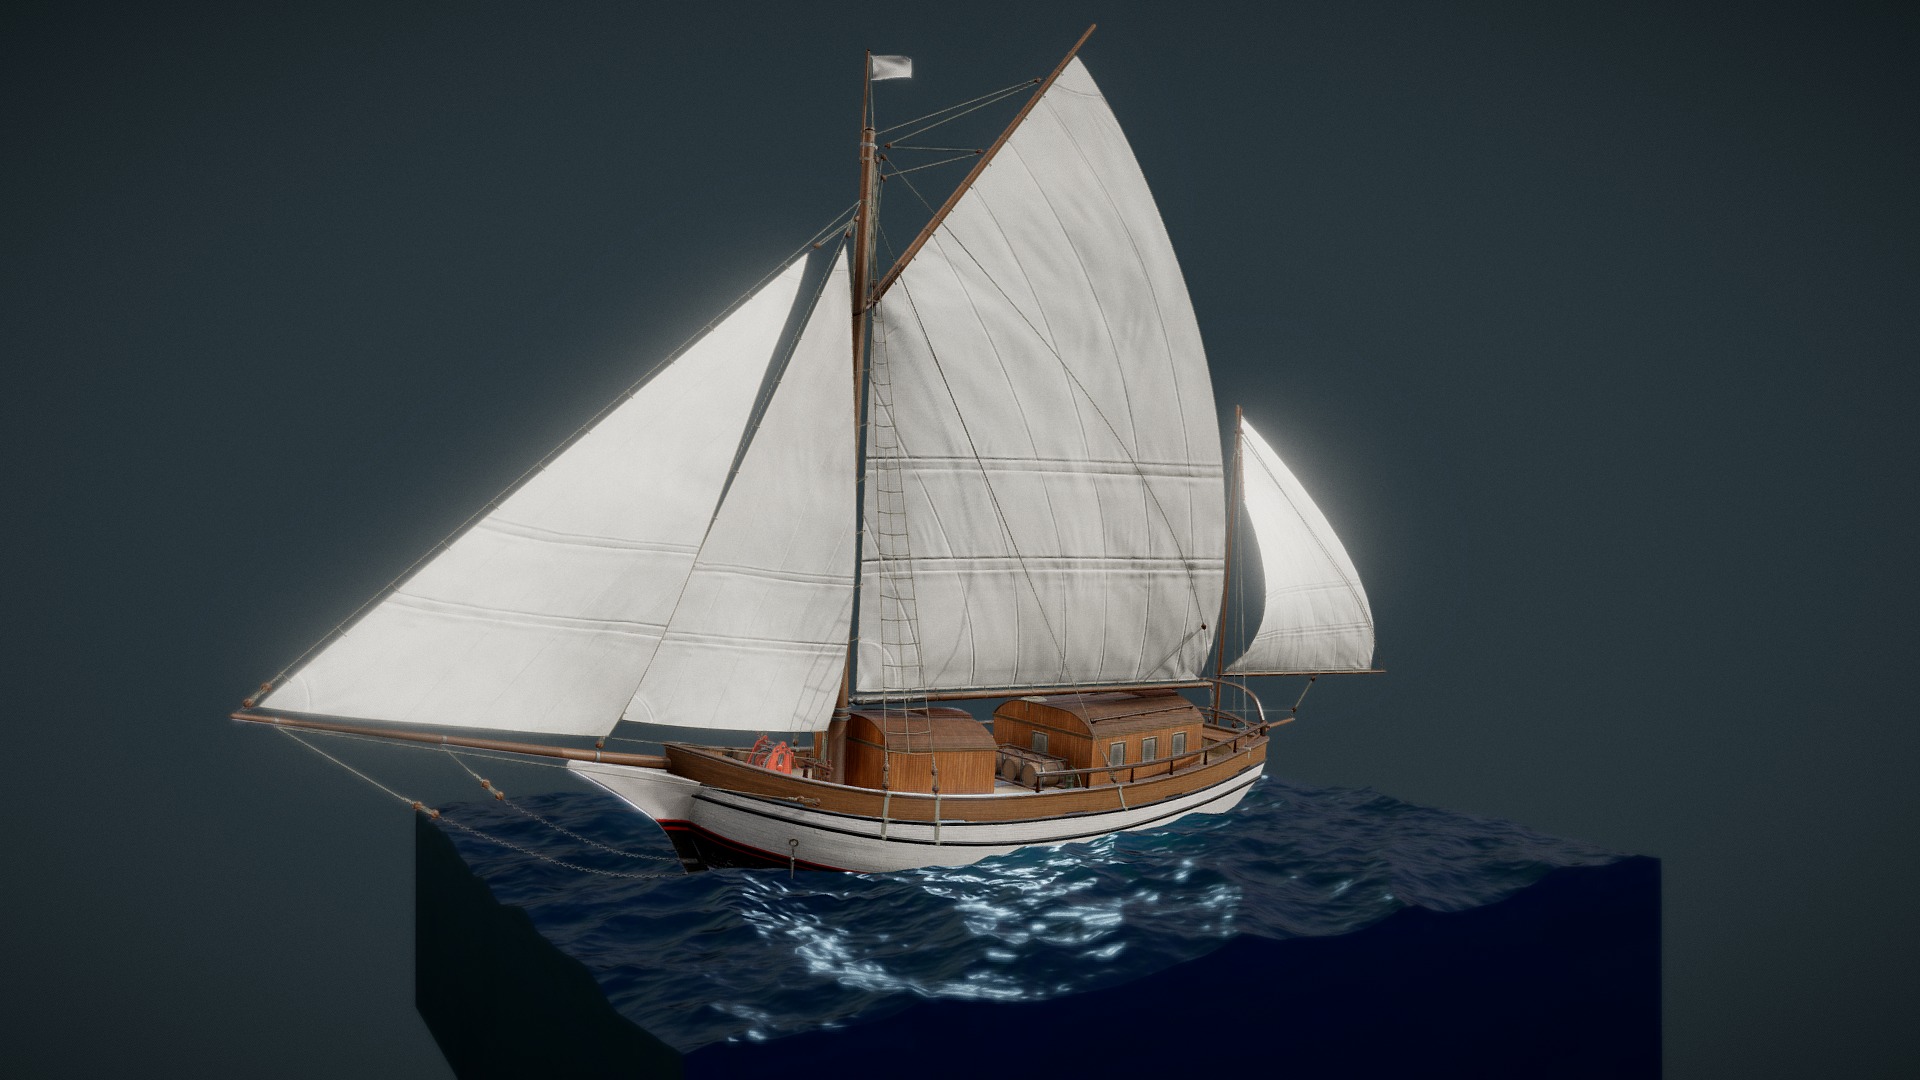 3D model Sailing Vessel "Spray" - This is a 3D model of the Sailing Vessel "Spray". The 3D model is about a model of a sailboat.